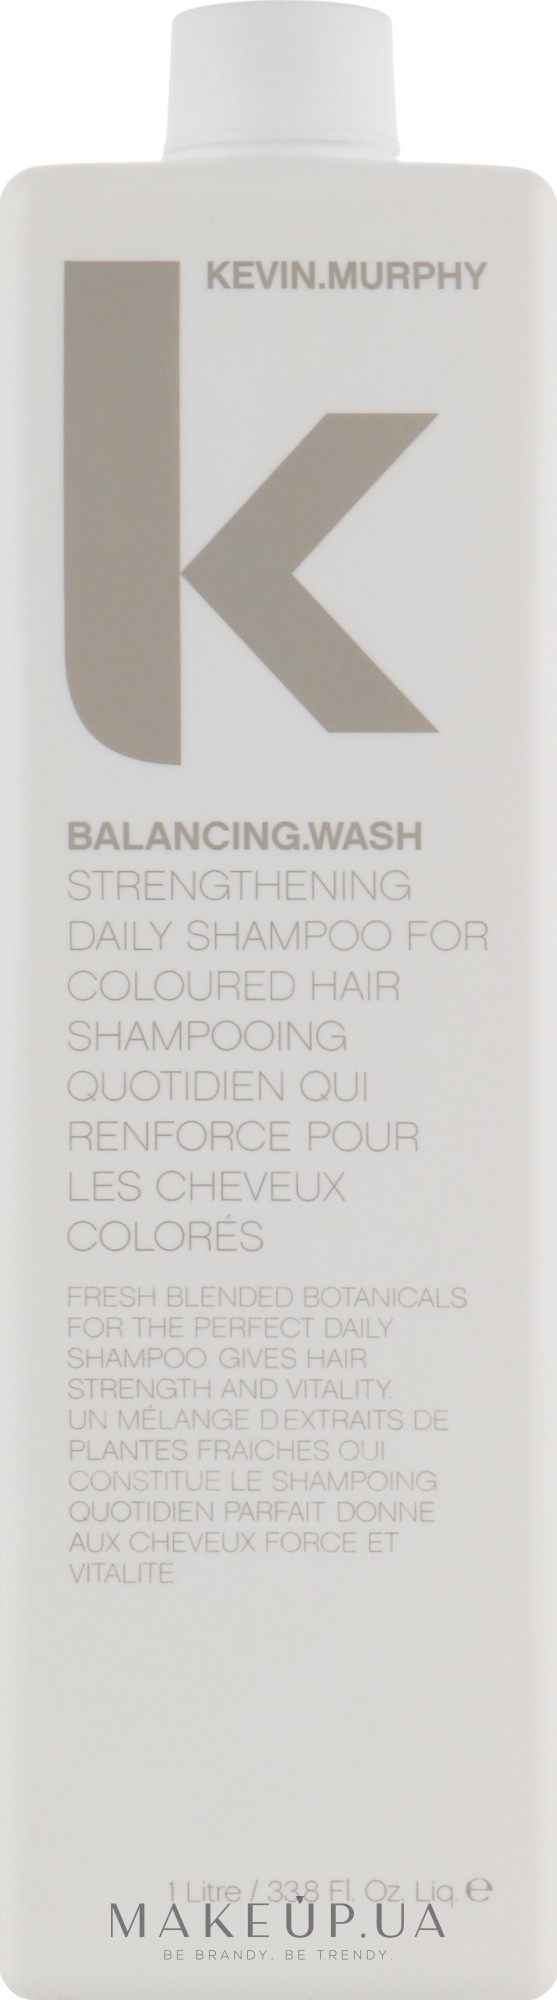 Зміцнювальний щоденний шампунь для фарбованого волосся - Kevin.Murphy Balancing.Wash — фото 1000ml